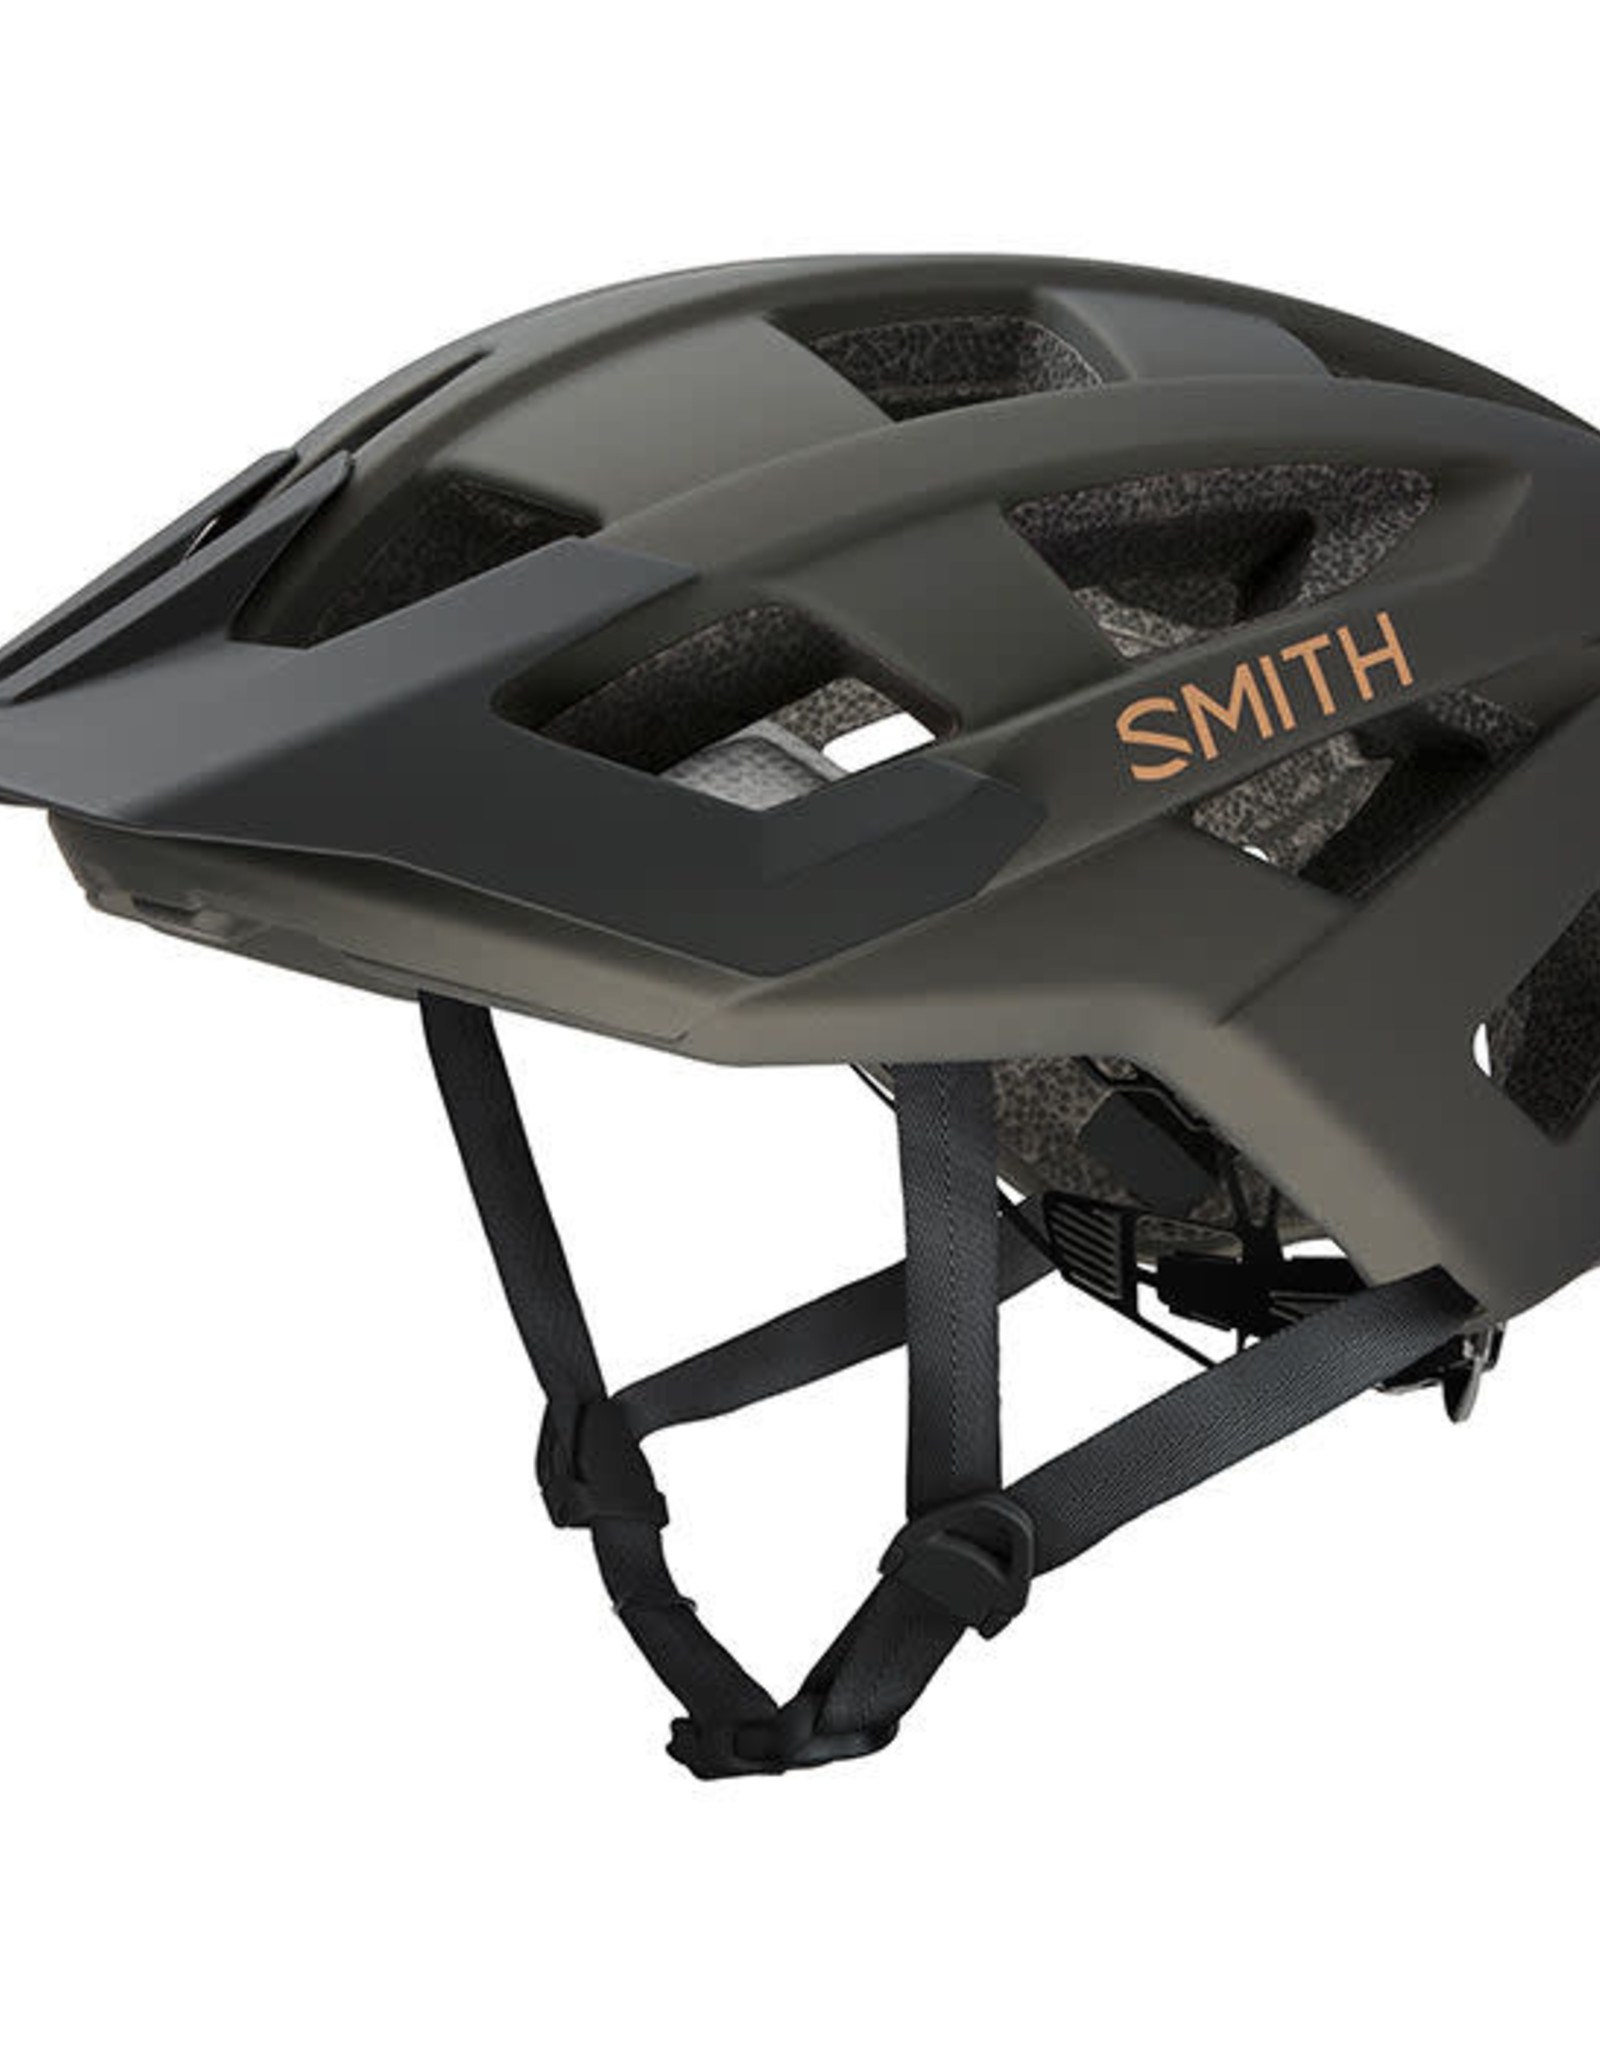 Smith Optics Venture Helmet